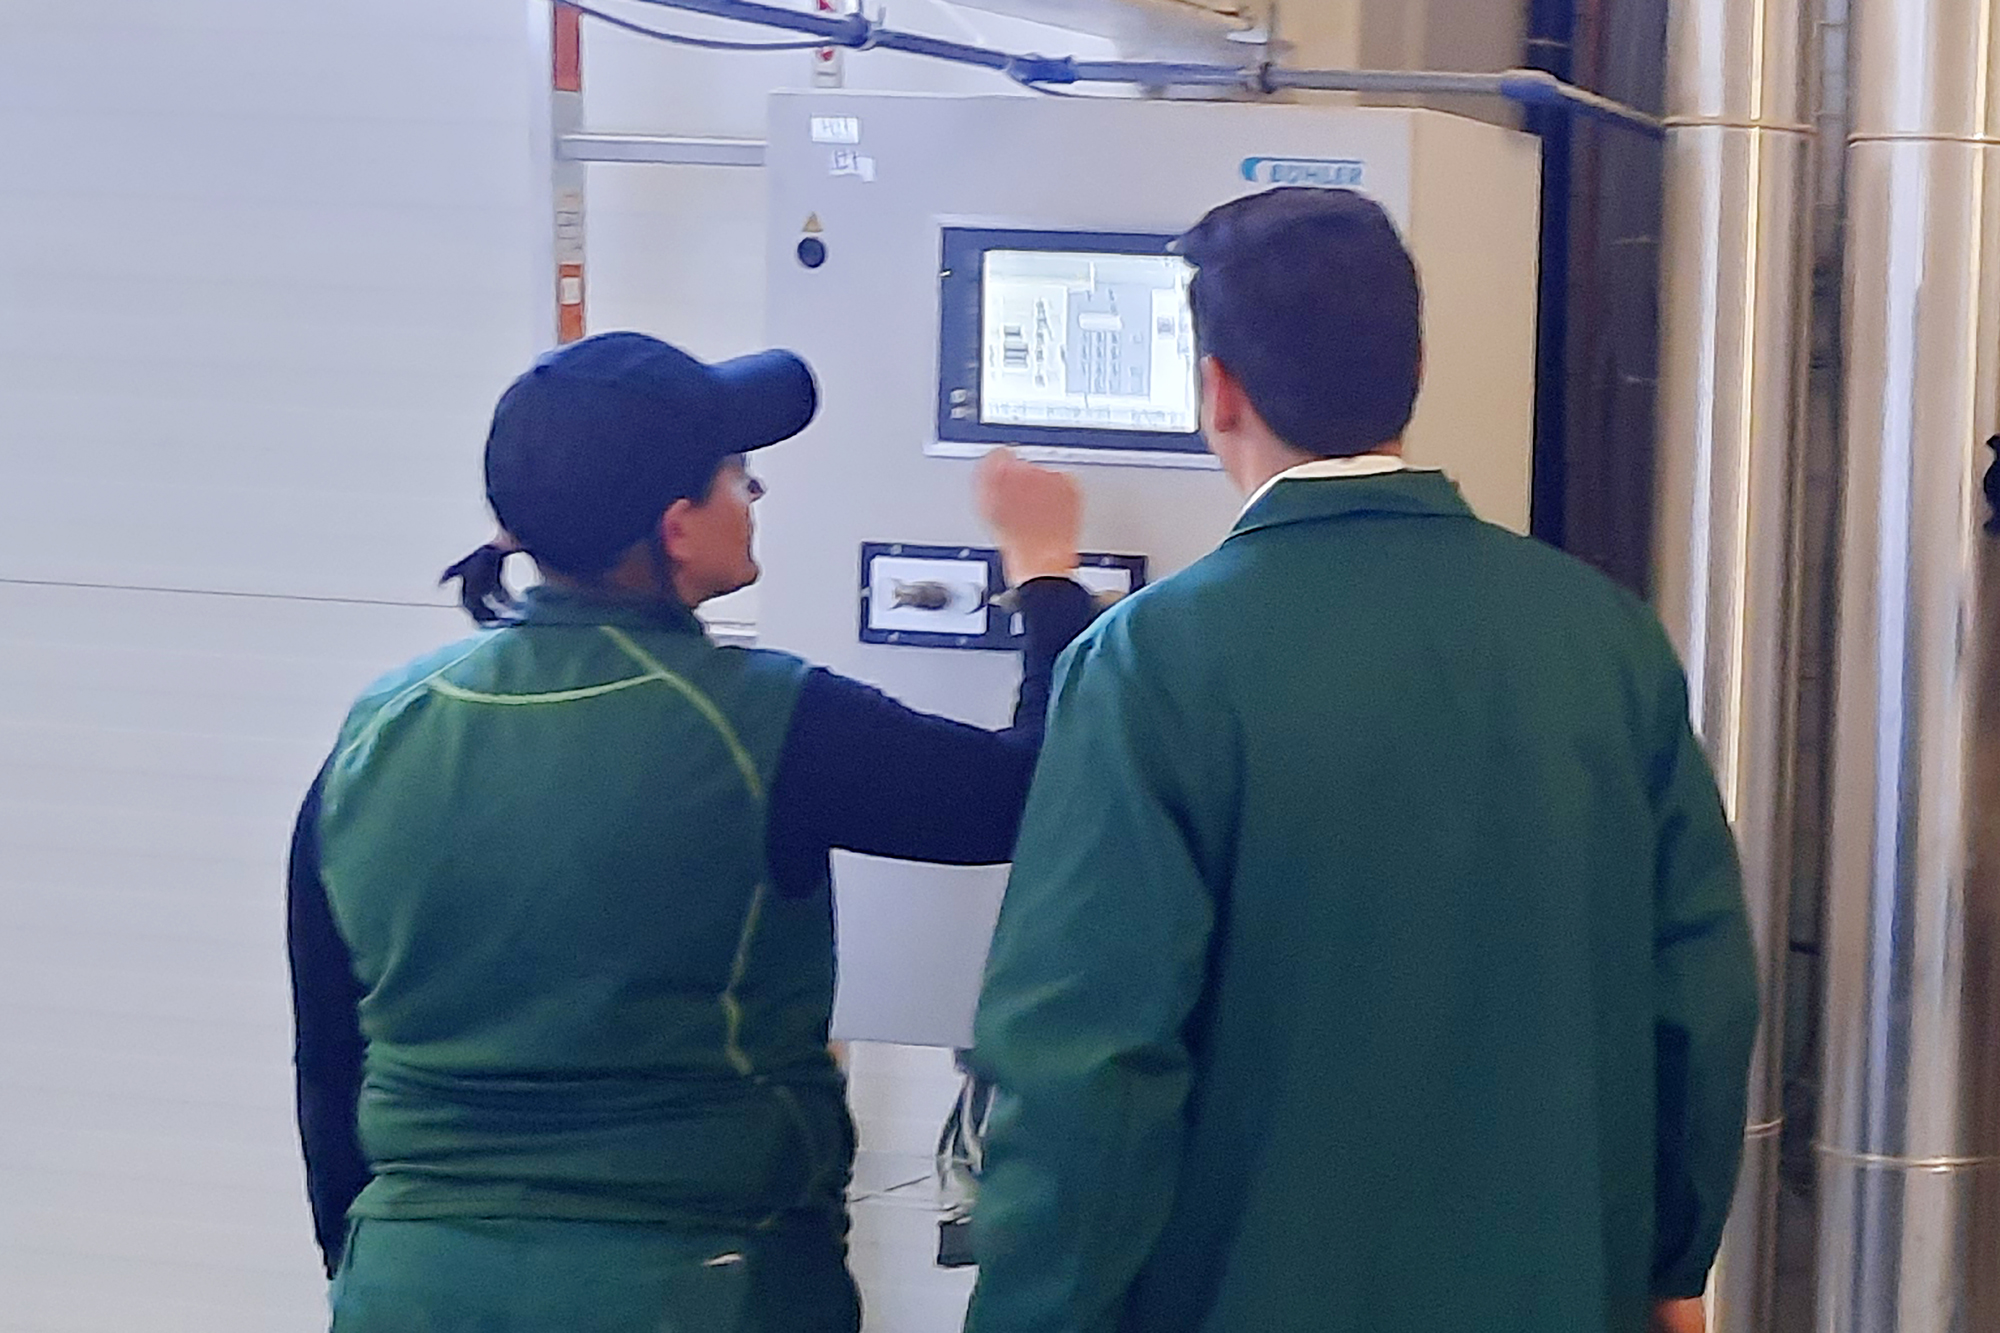 Futtermühle Gniebing - Automatische Anlagensteuerung in der Produktion